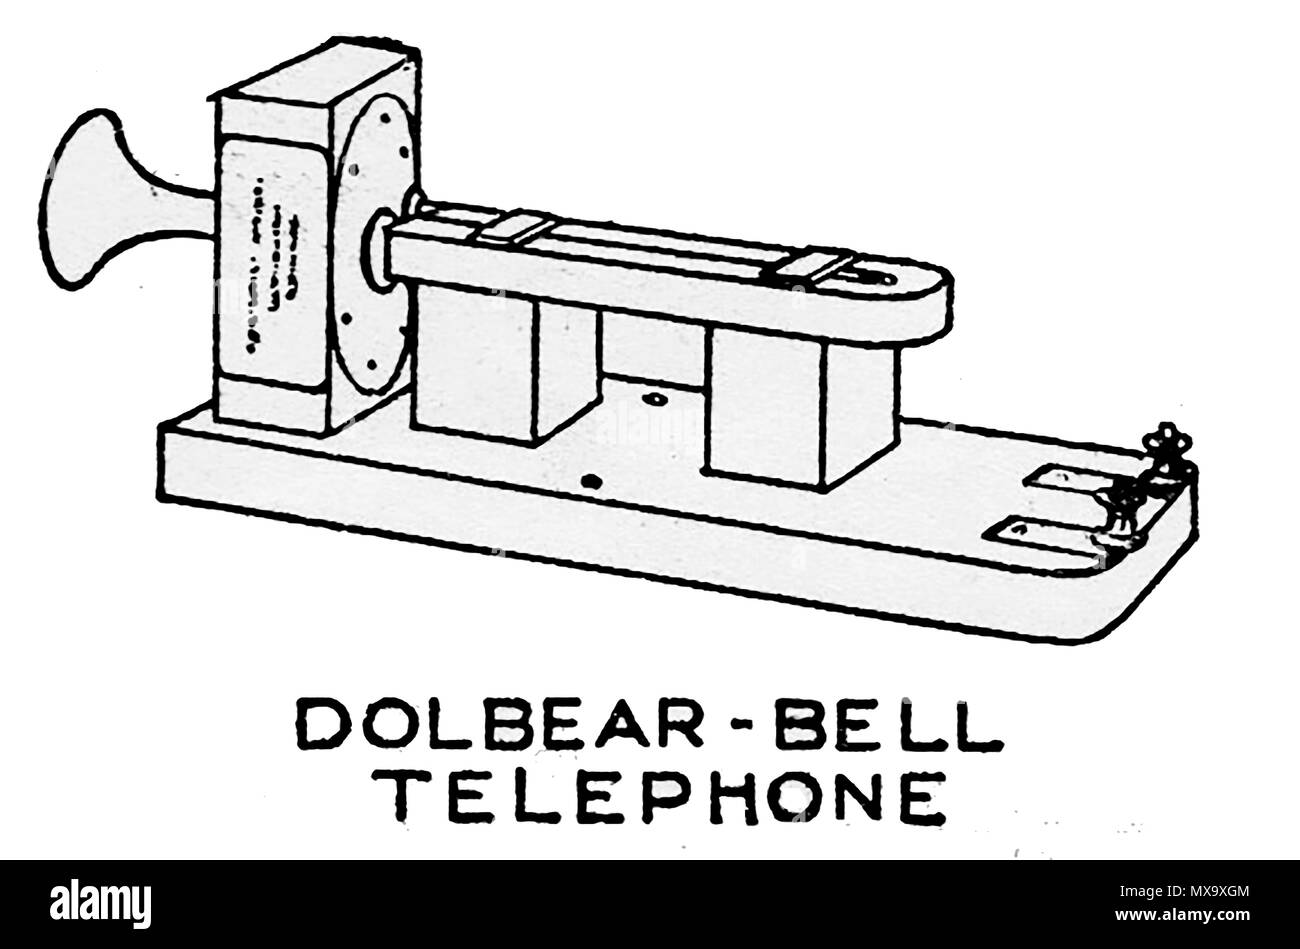 L'équipement téléphonique au début de 1930 - illustration d'un Dolbear-Bell appareil téléphonique Banque D'Images